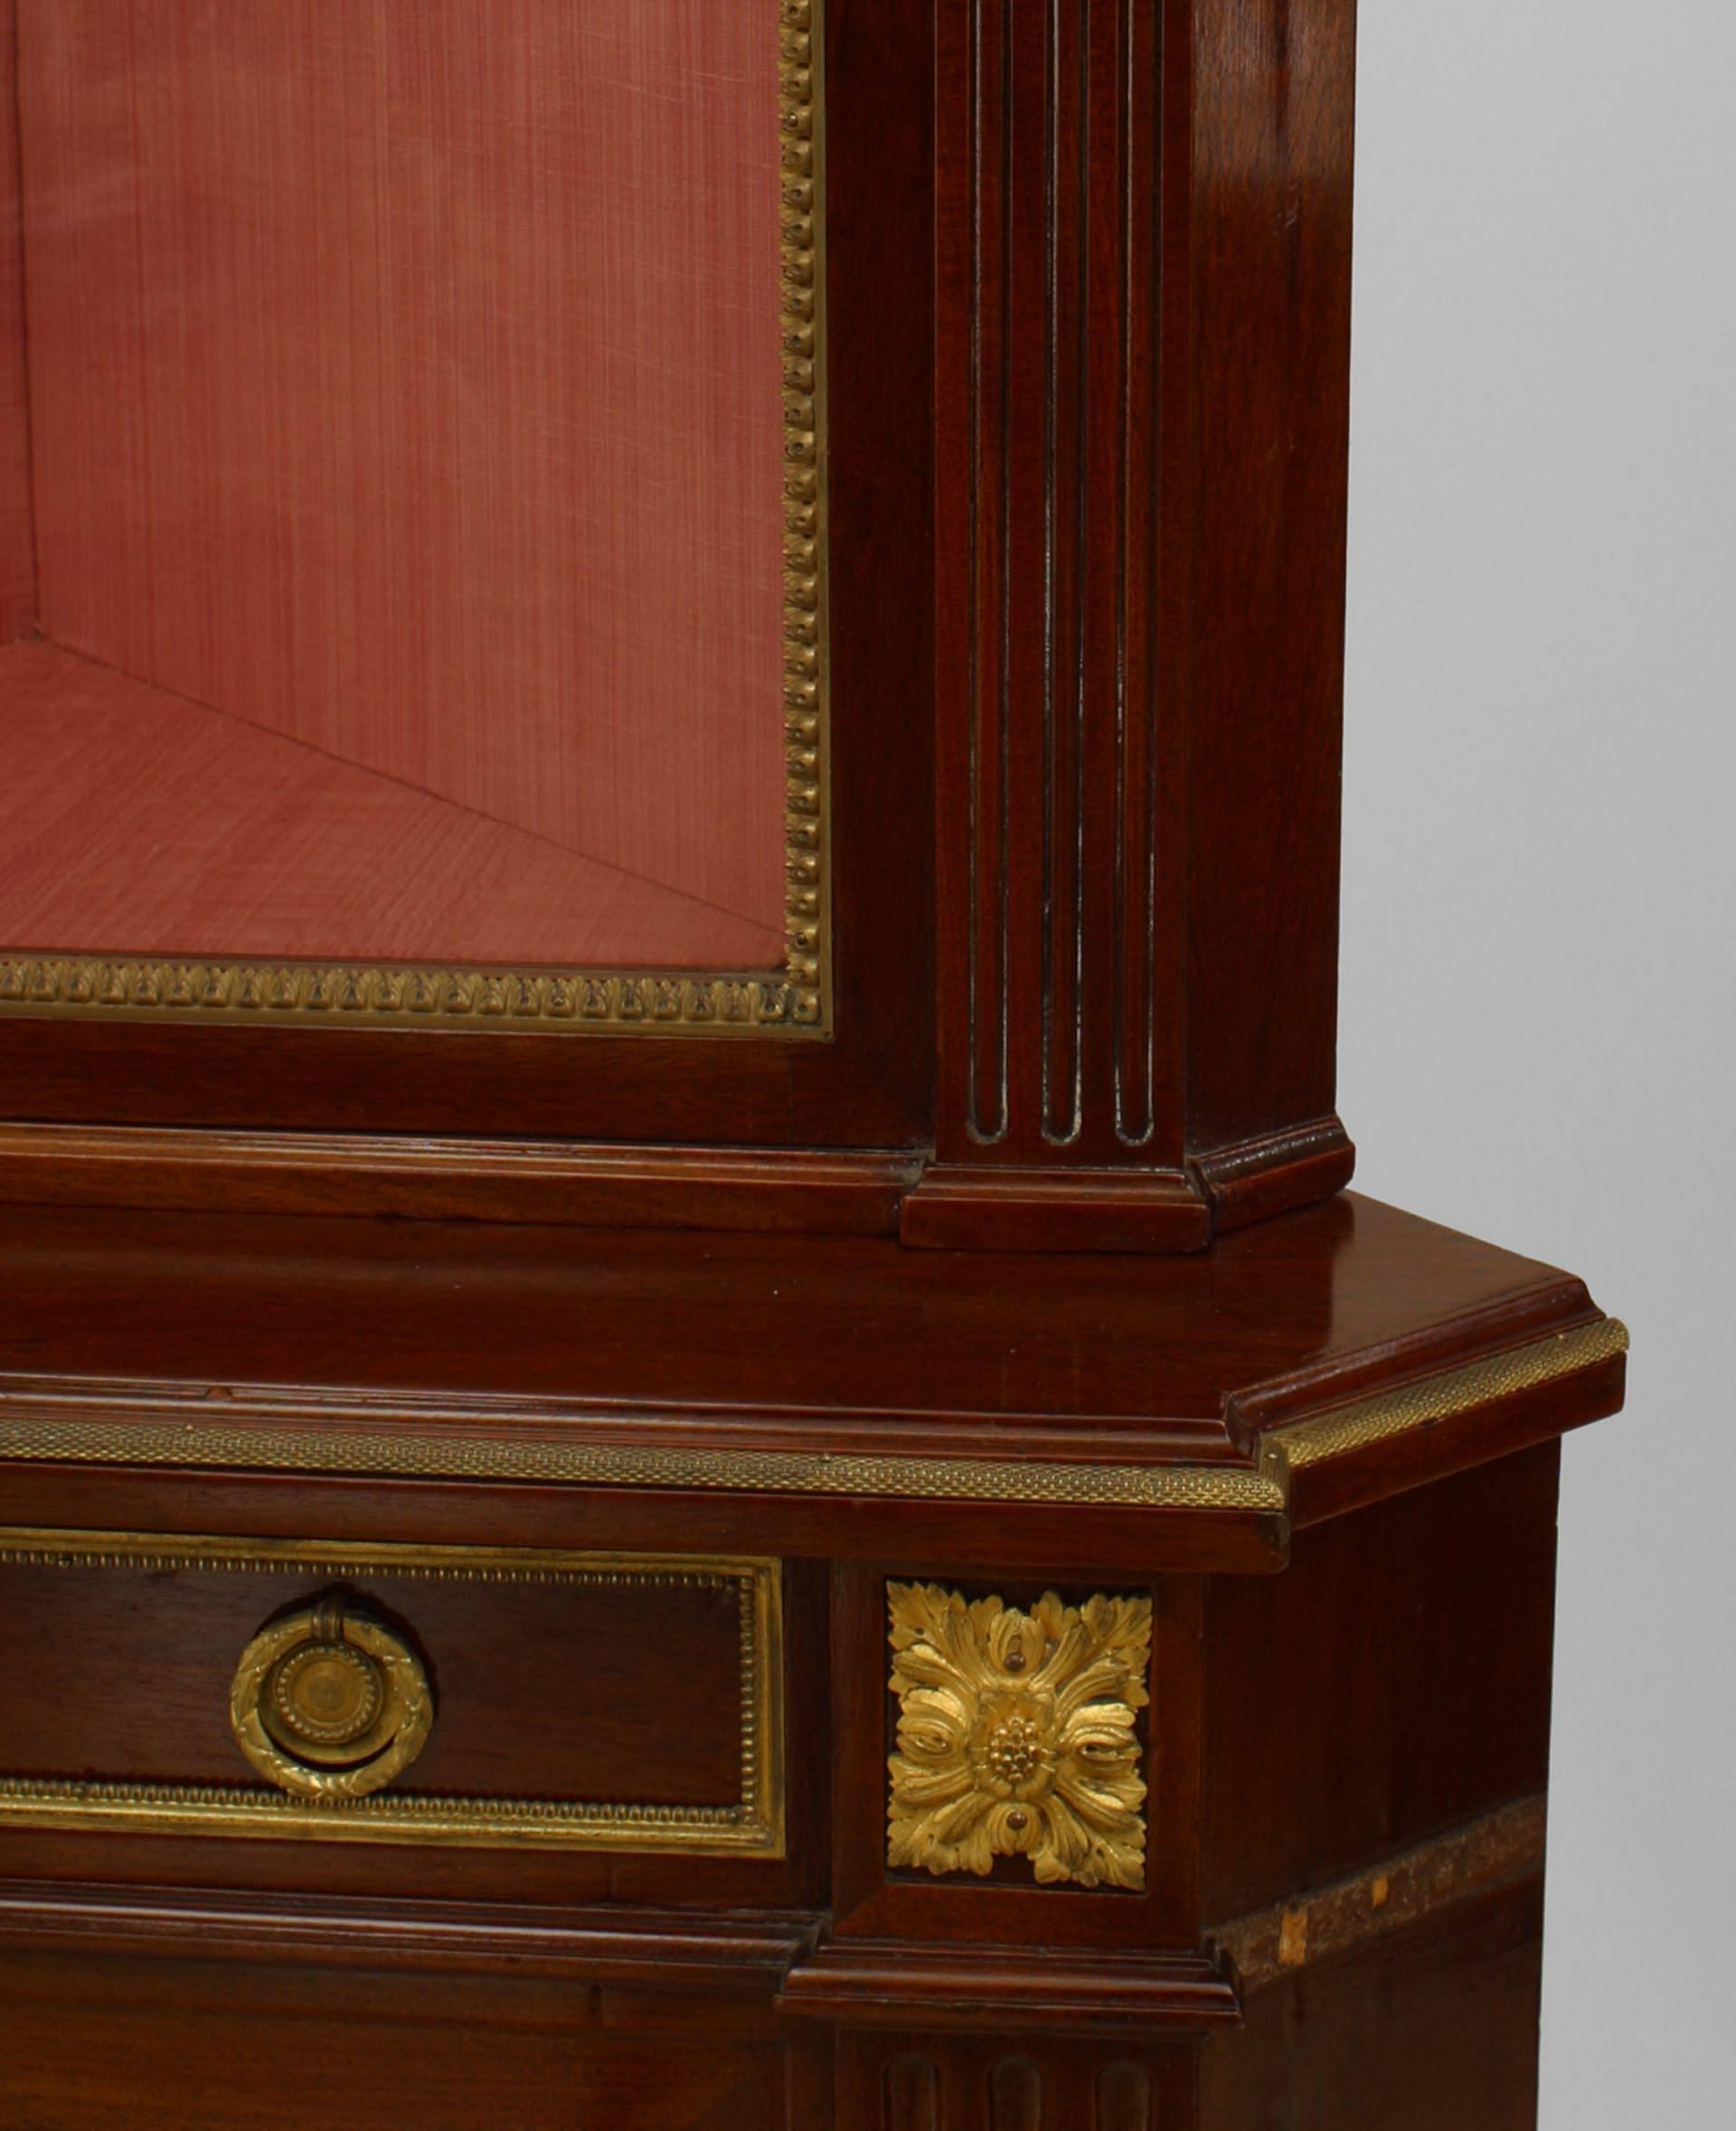 Französischer Eckschrank aus Mahagoni im Louis XVI-Stil (19. Jh.), 2-teilig, mit vergoldetem Bronzeschmuck und einem oberen Teil mit Glastür und einem unteren Teil mit einer Schublade und einer Tür mit Messinggitter
